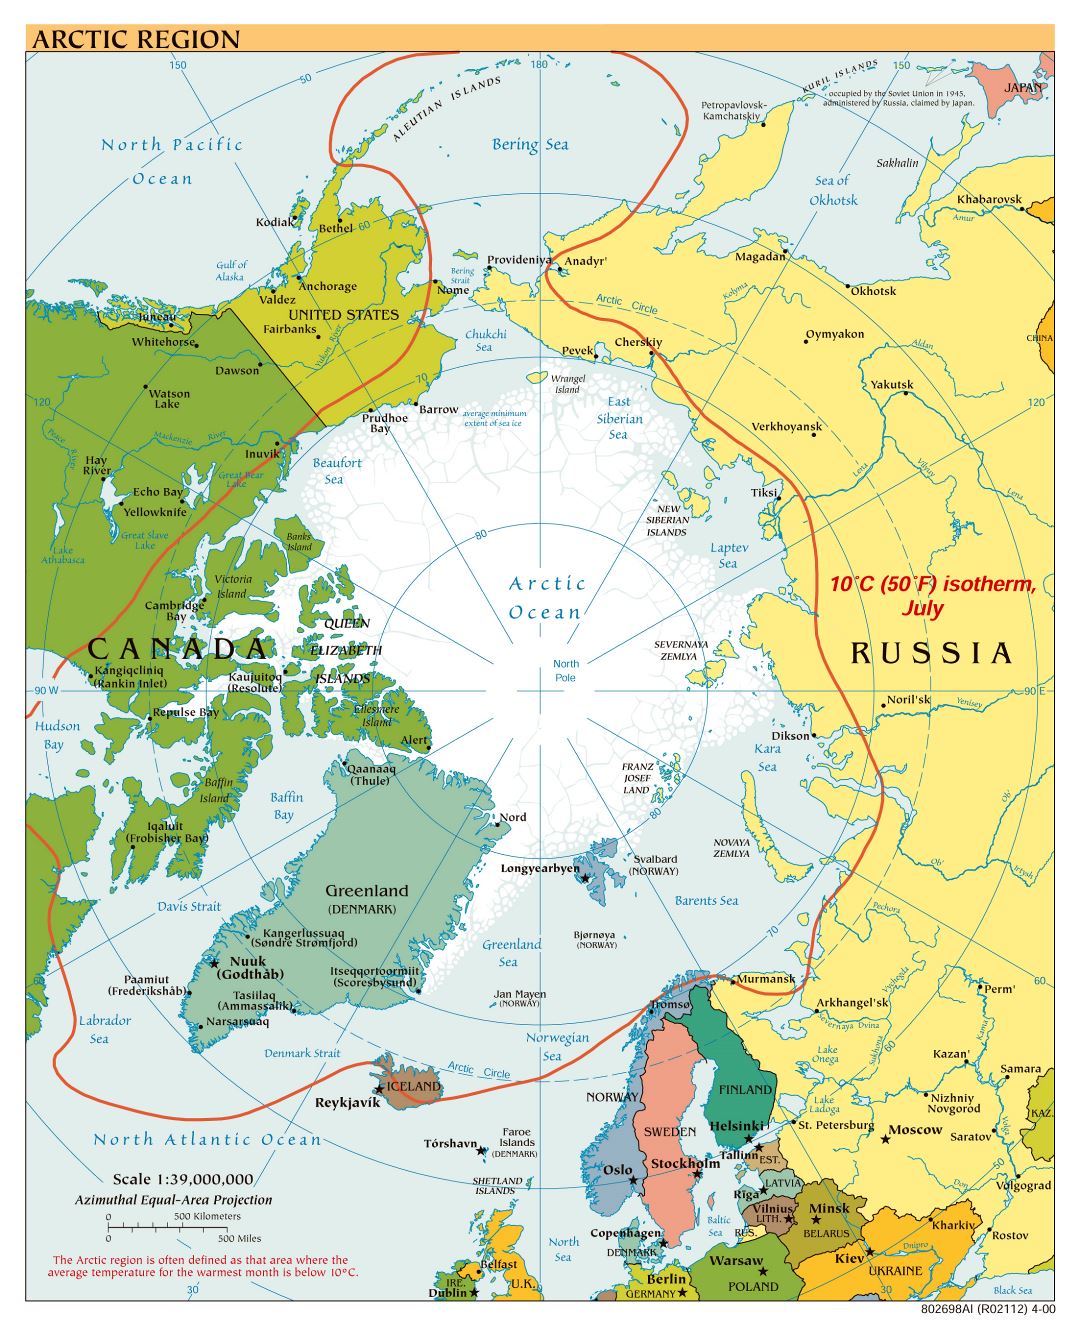 Mapa político a gran escala de la Región Ártica - 2000